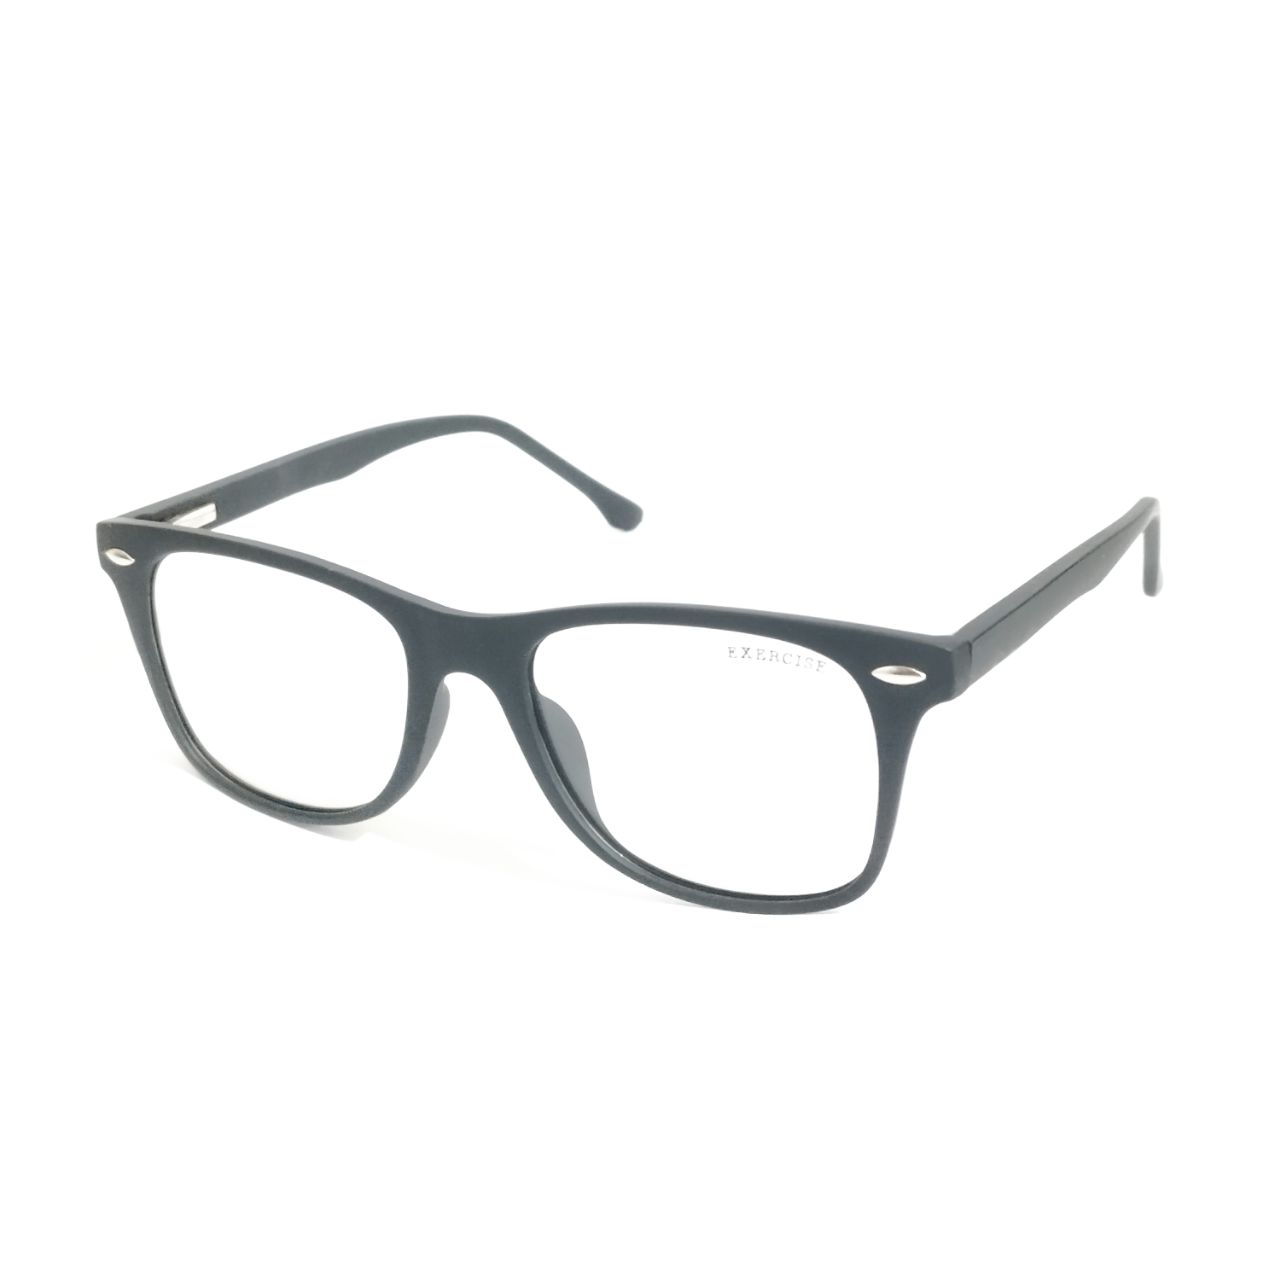 Photochromic Glasses Blue Light Blocking Glasses for Men and Women Day Night Multi-use Eyeglasses